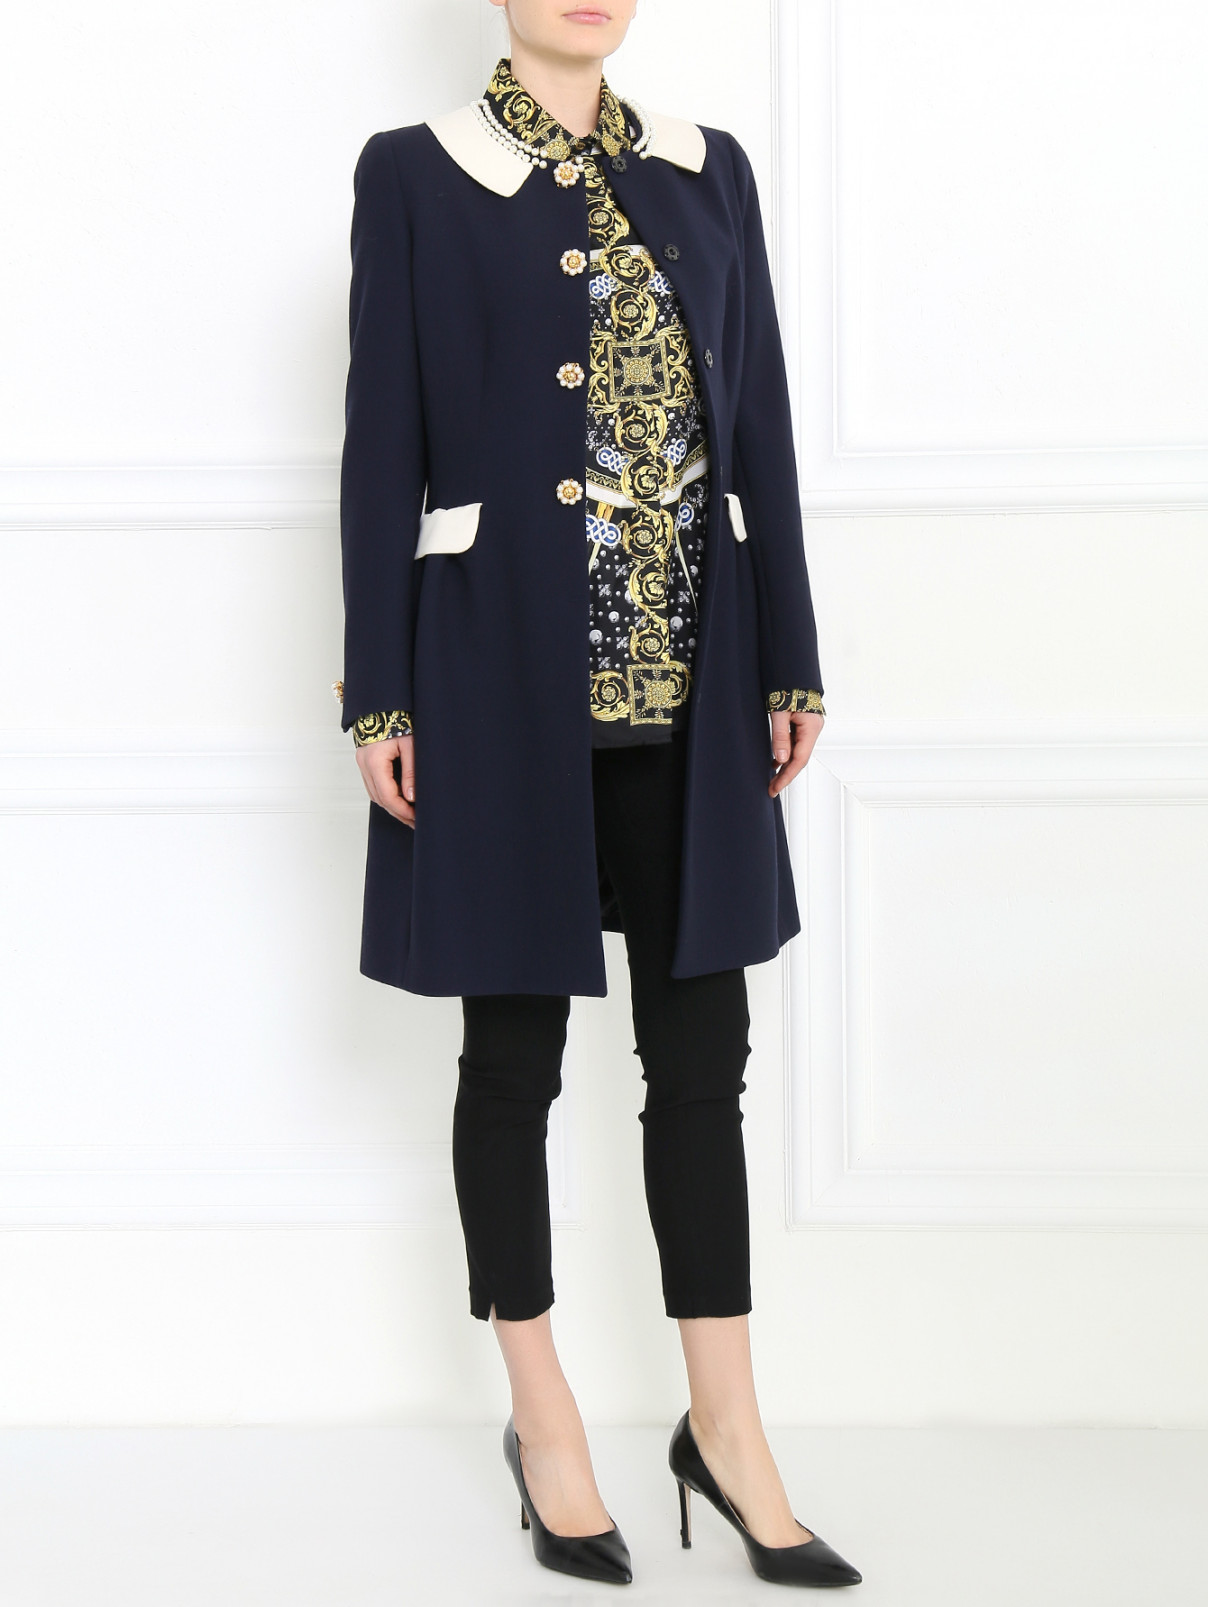 Пальто из шерсти и хлопка с декоративной отделкой Moschino  –  Модель Общий вид  – Цвет:  Синий